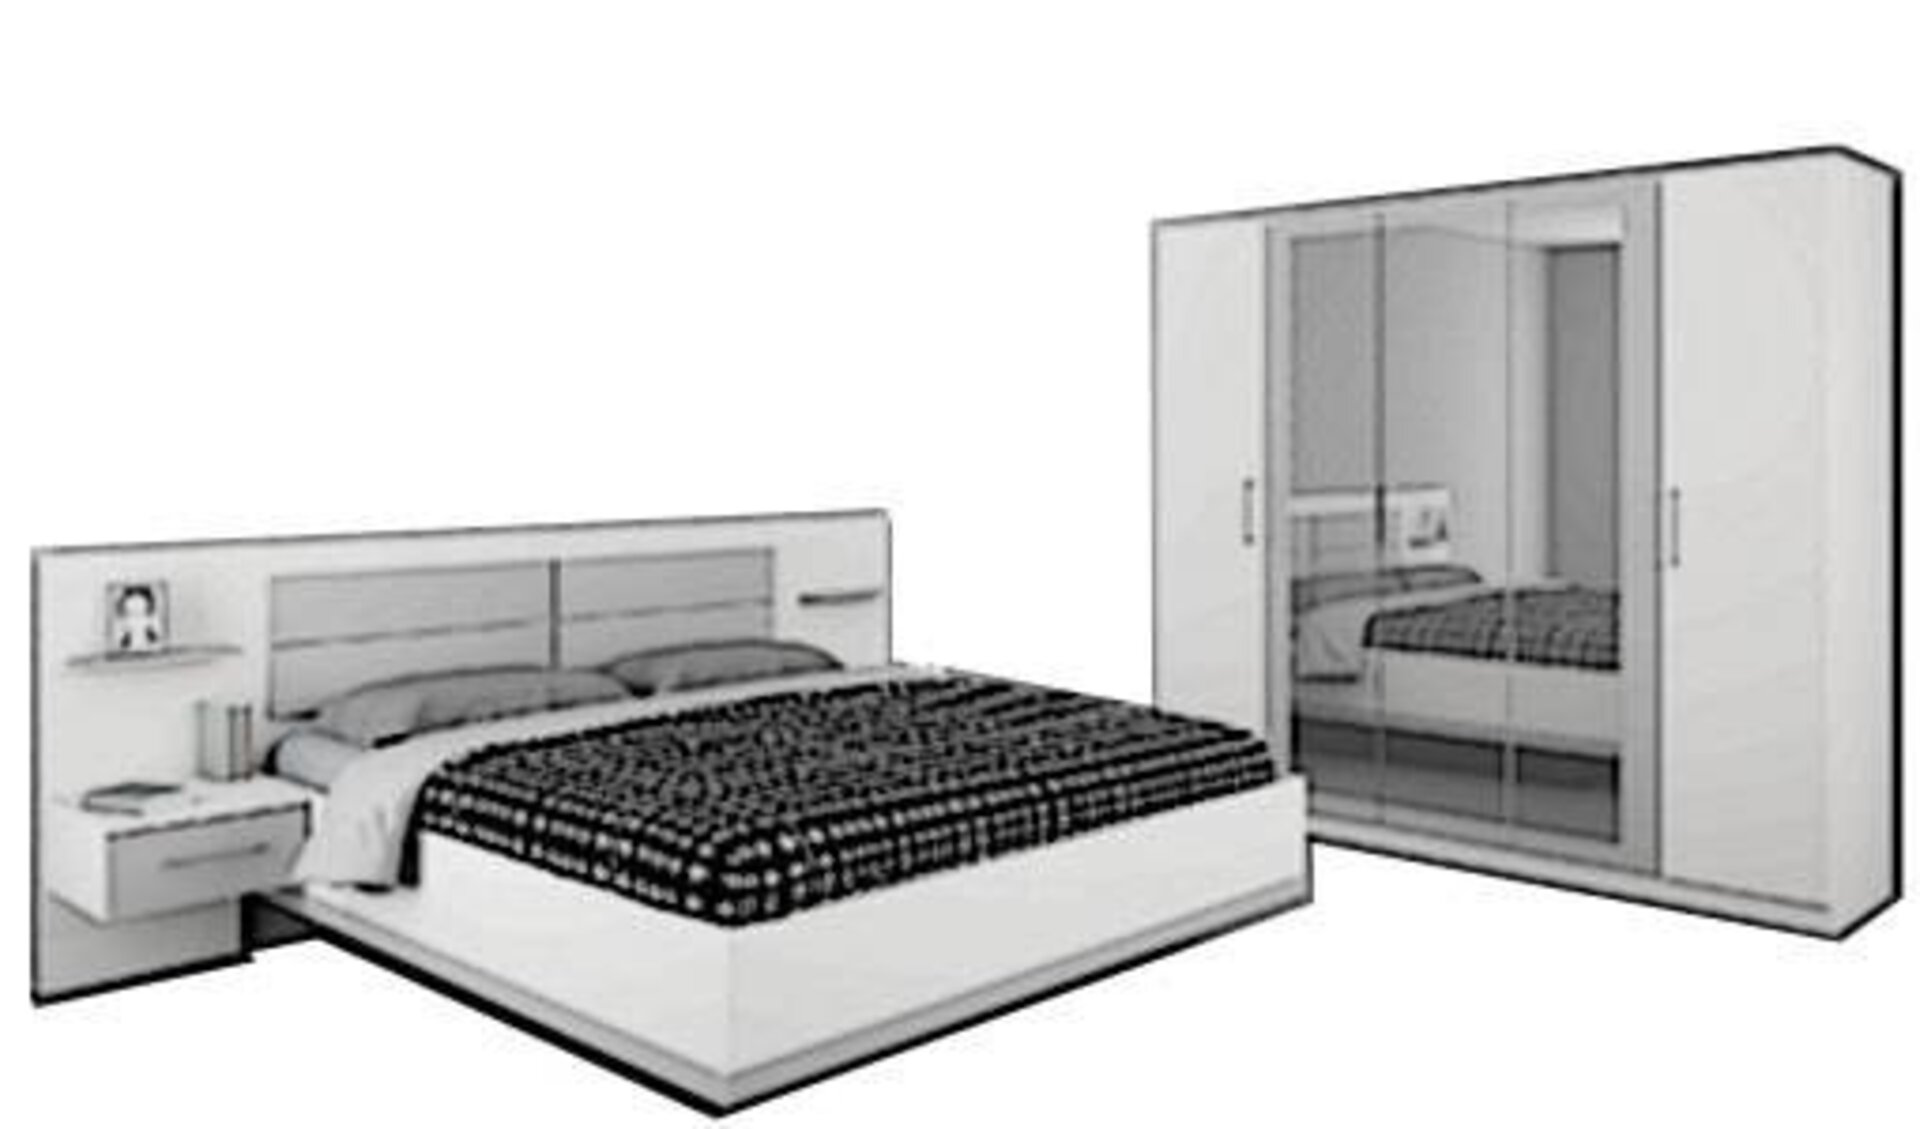 Icon für die Kategorie Schlafzimmer komplett. Das Schlafzimmerset wird durch eine Doppelbett mit integrierten Ablagen, sowie einem großen Kleiderschrank dargestellt.